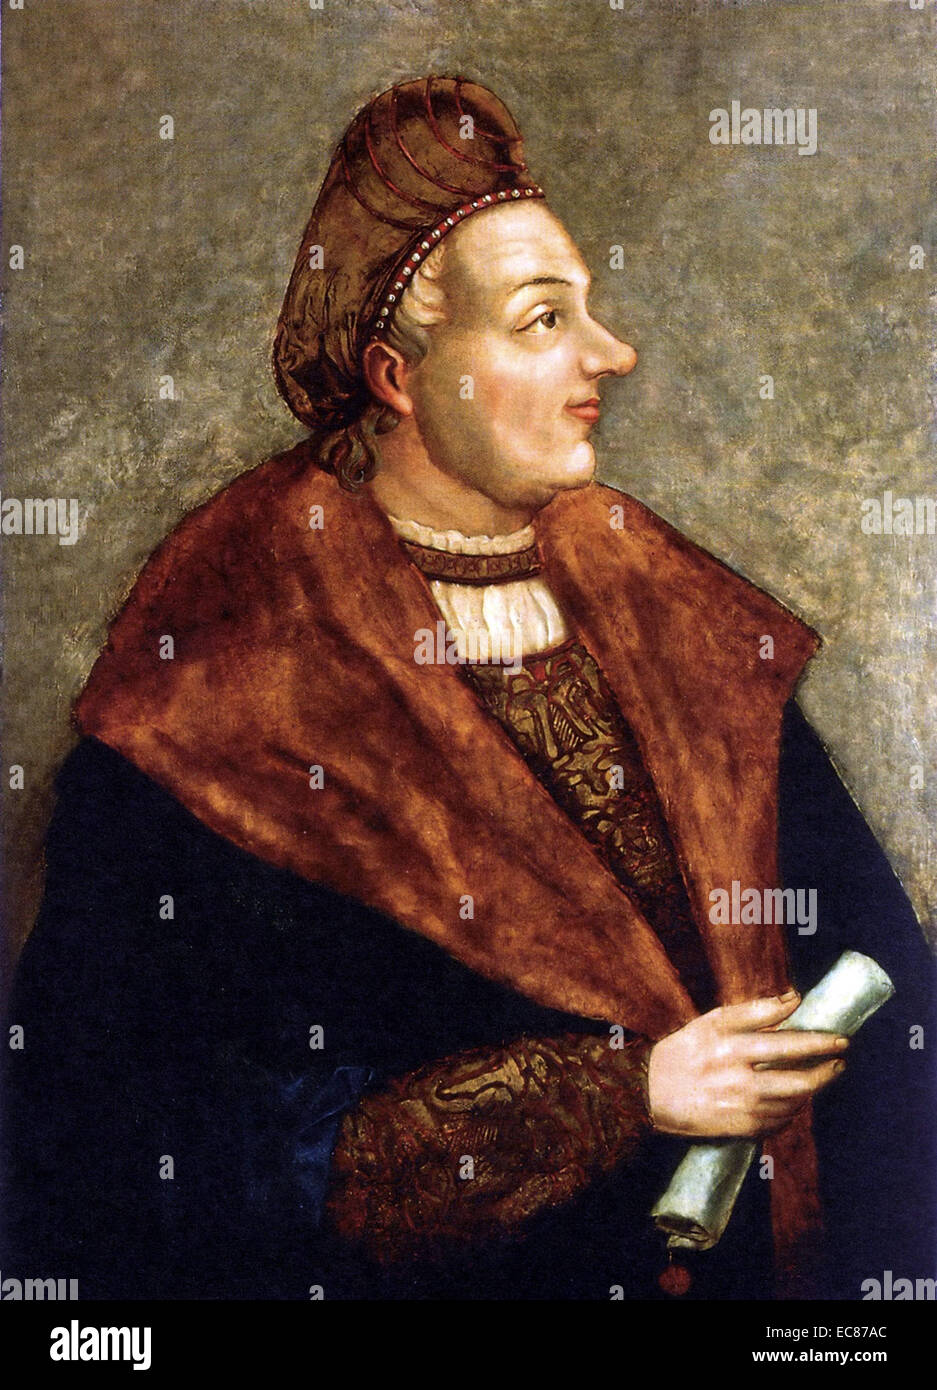 Ritratto di Sigismondo I di Polonia (1467-1548) dell'Jagiellon dinastia regnò come Re di Polonia e anche come il granduca di Lituania. Ritratto di Albrecht Dürer. Datata XVI Secolo Foto Stock